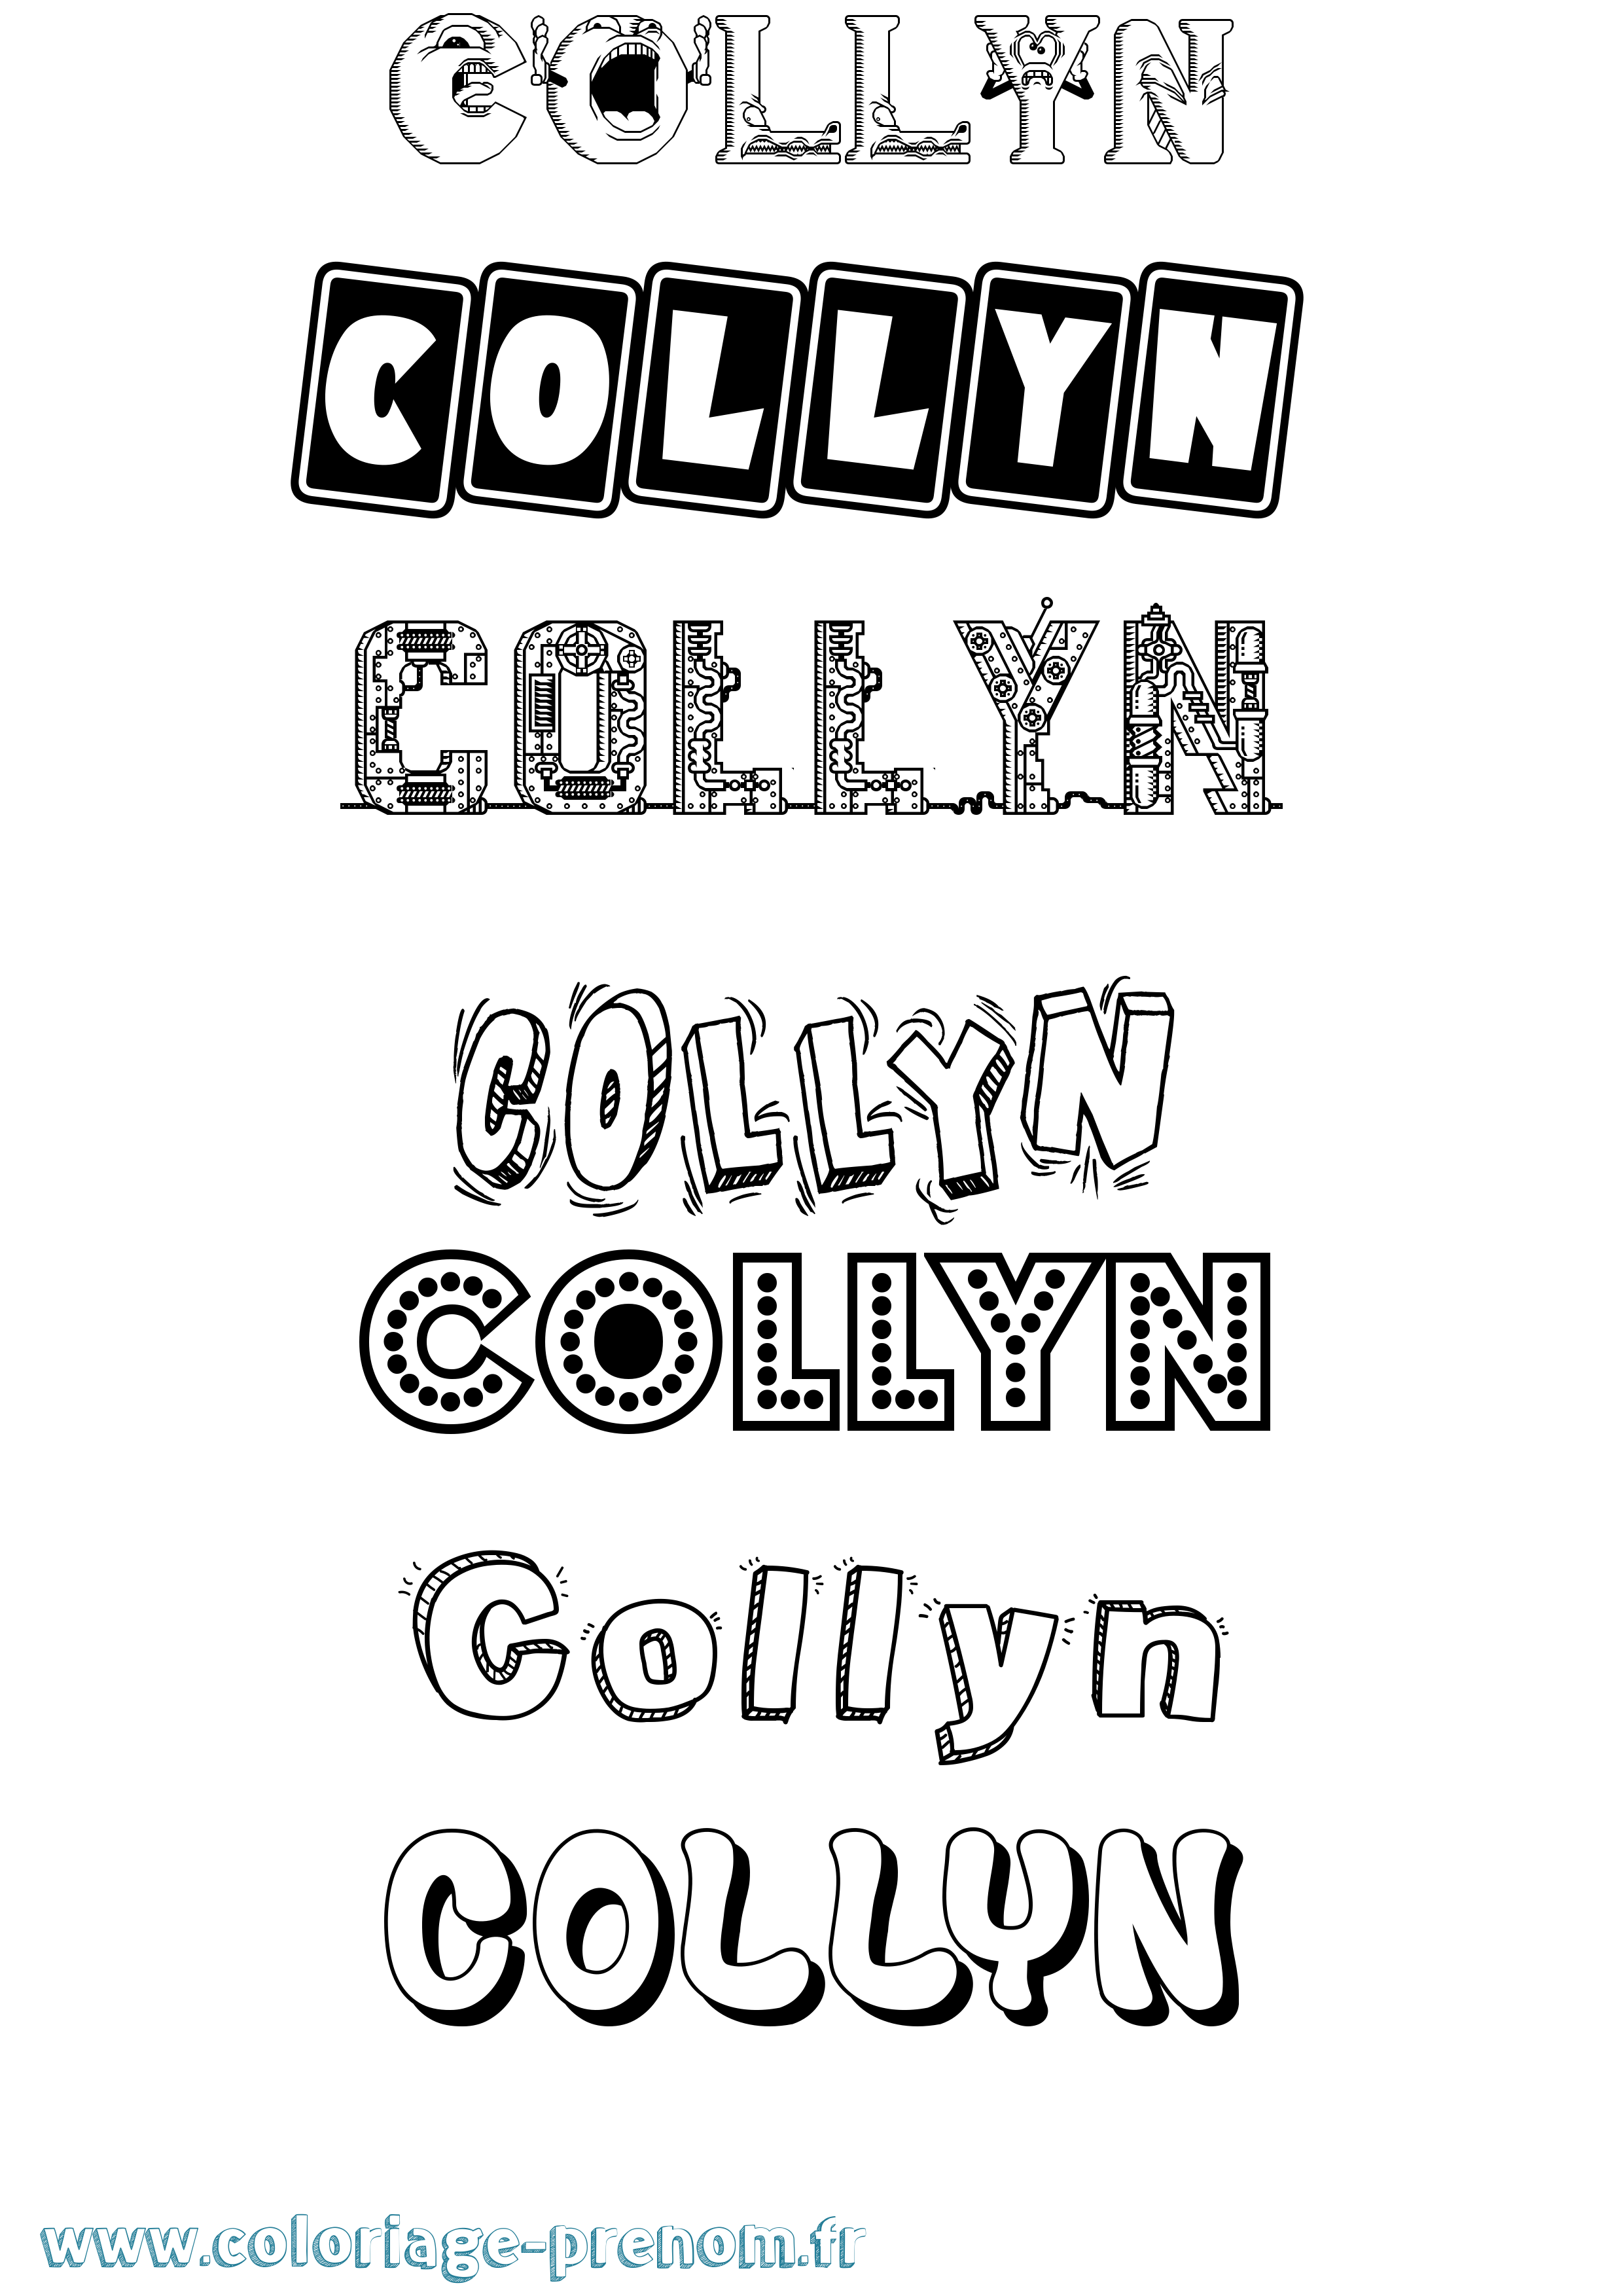 Coloriage prénom Collyn Fun